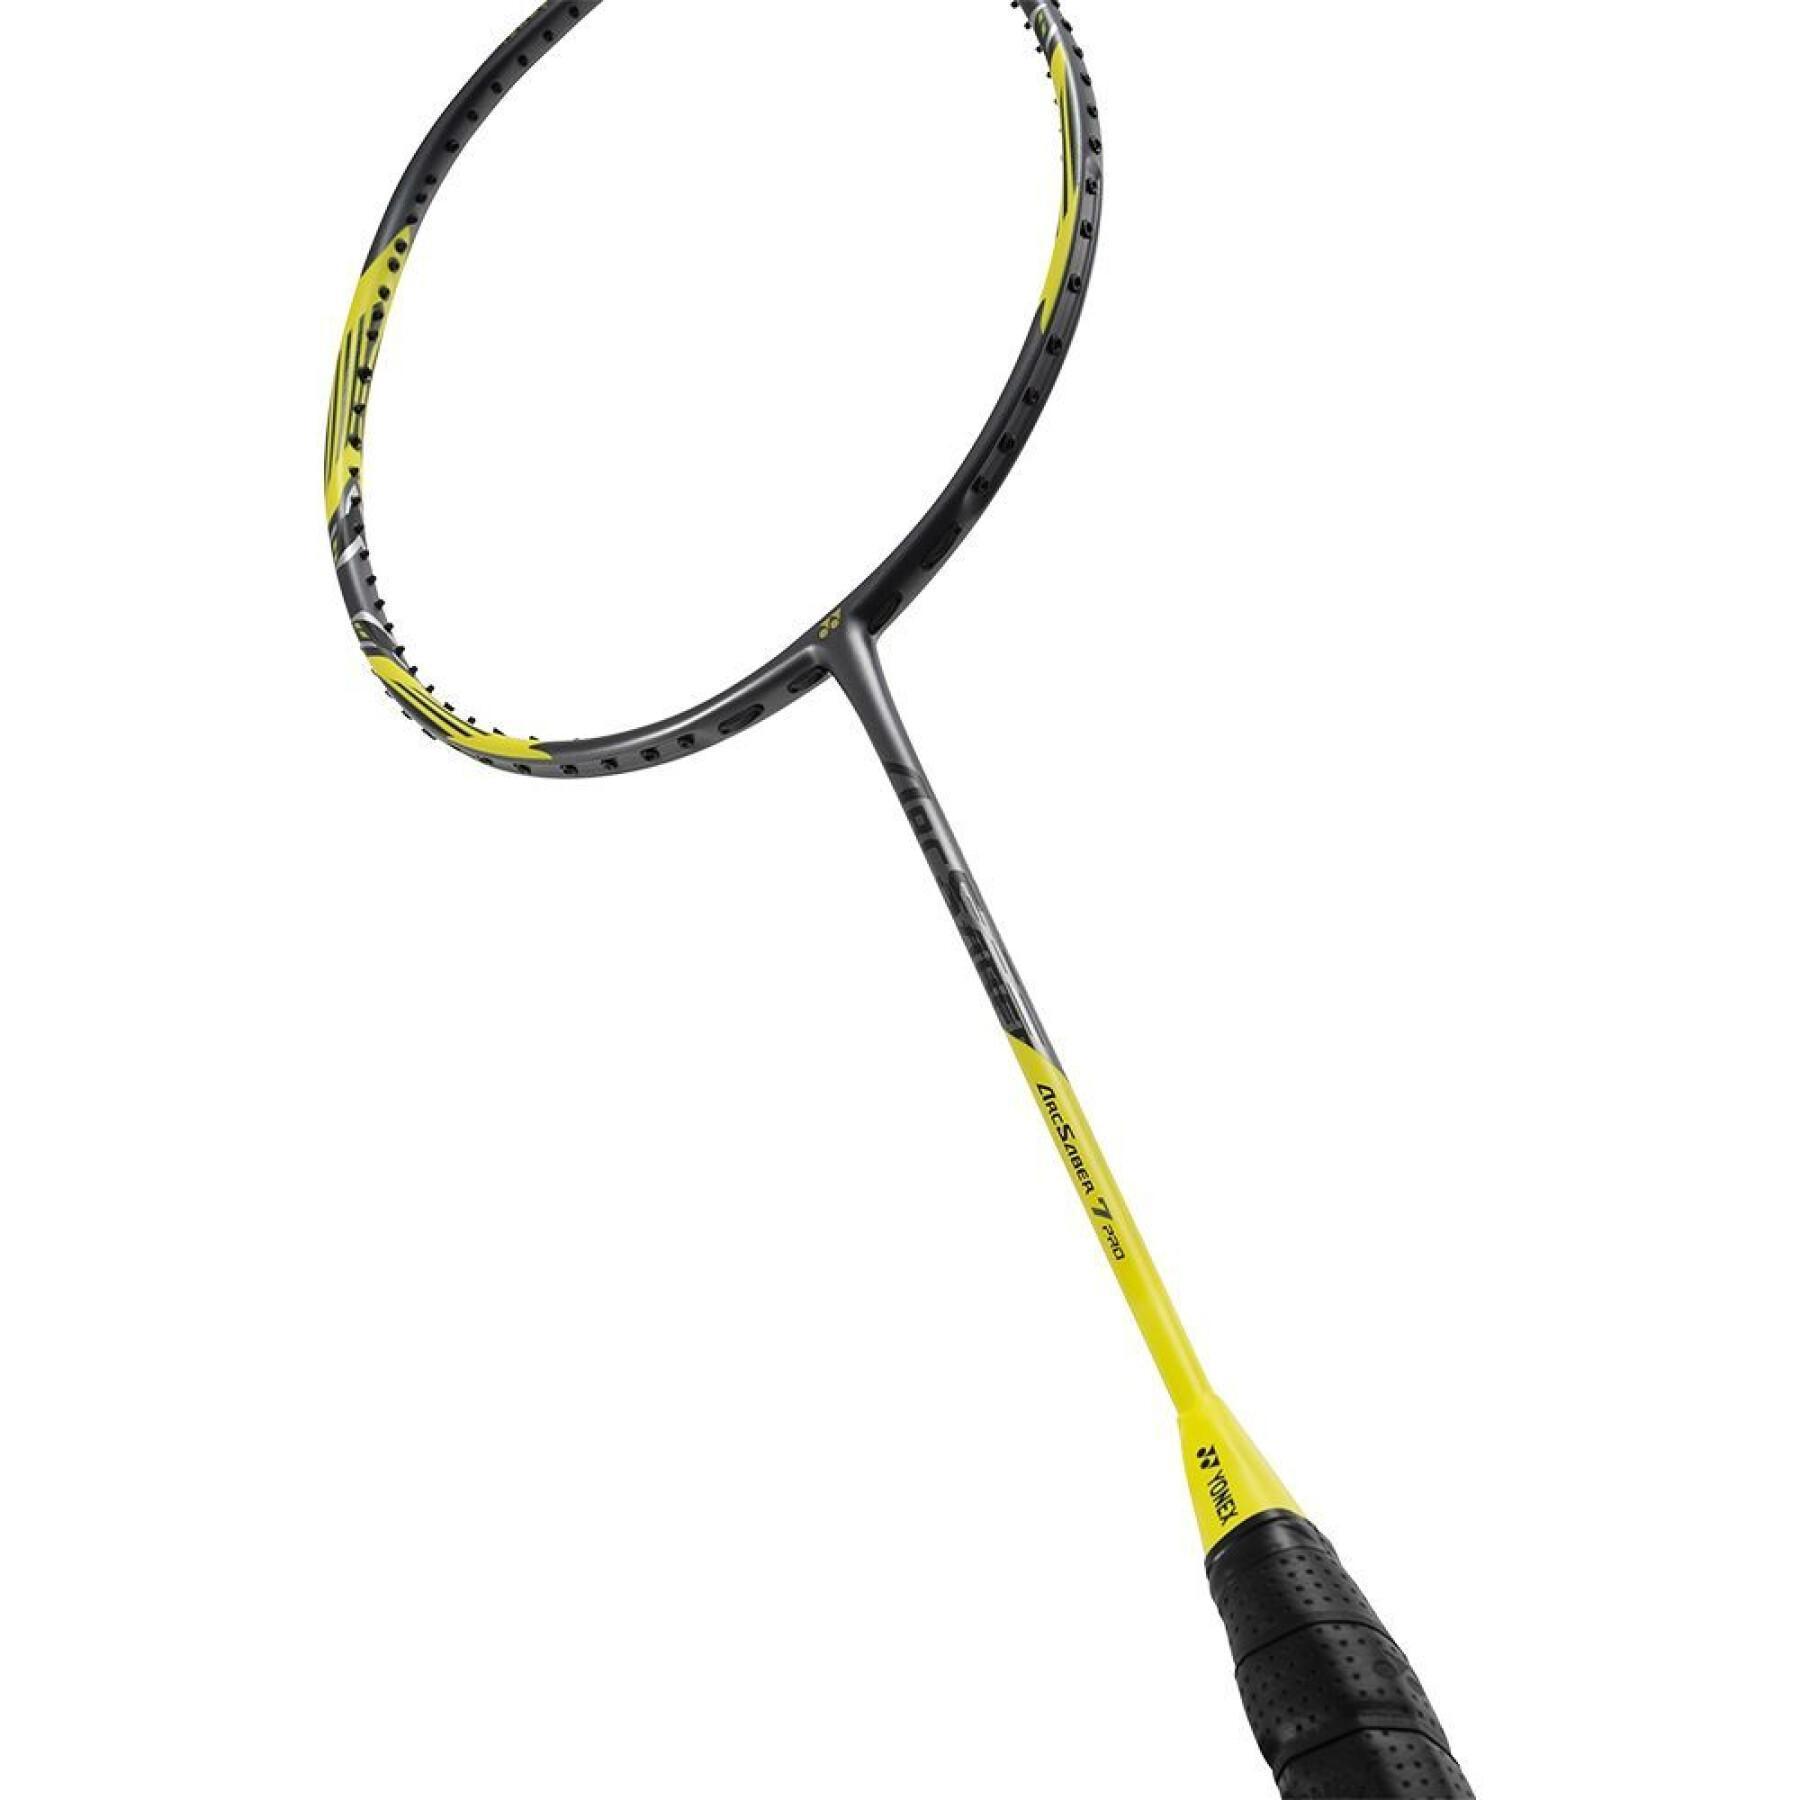 Badminton racket Yonex Arcsaber 7 pro 4U5